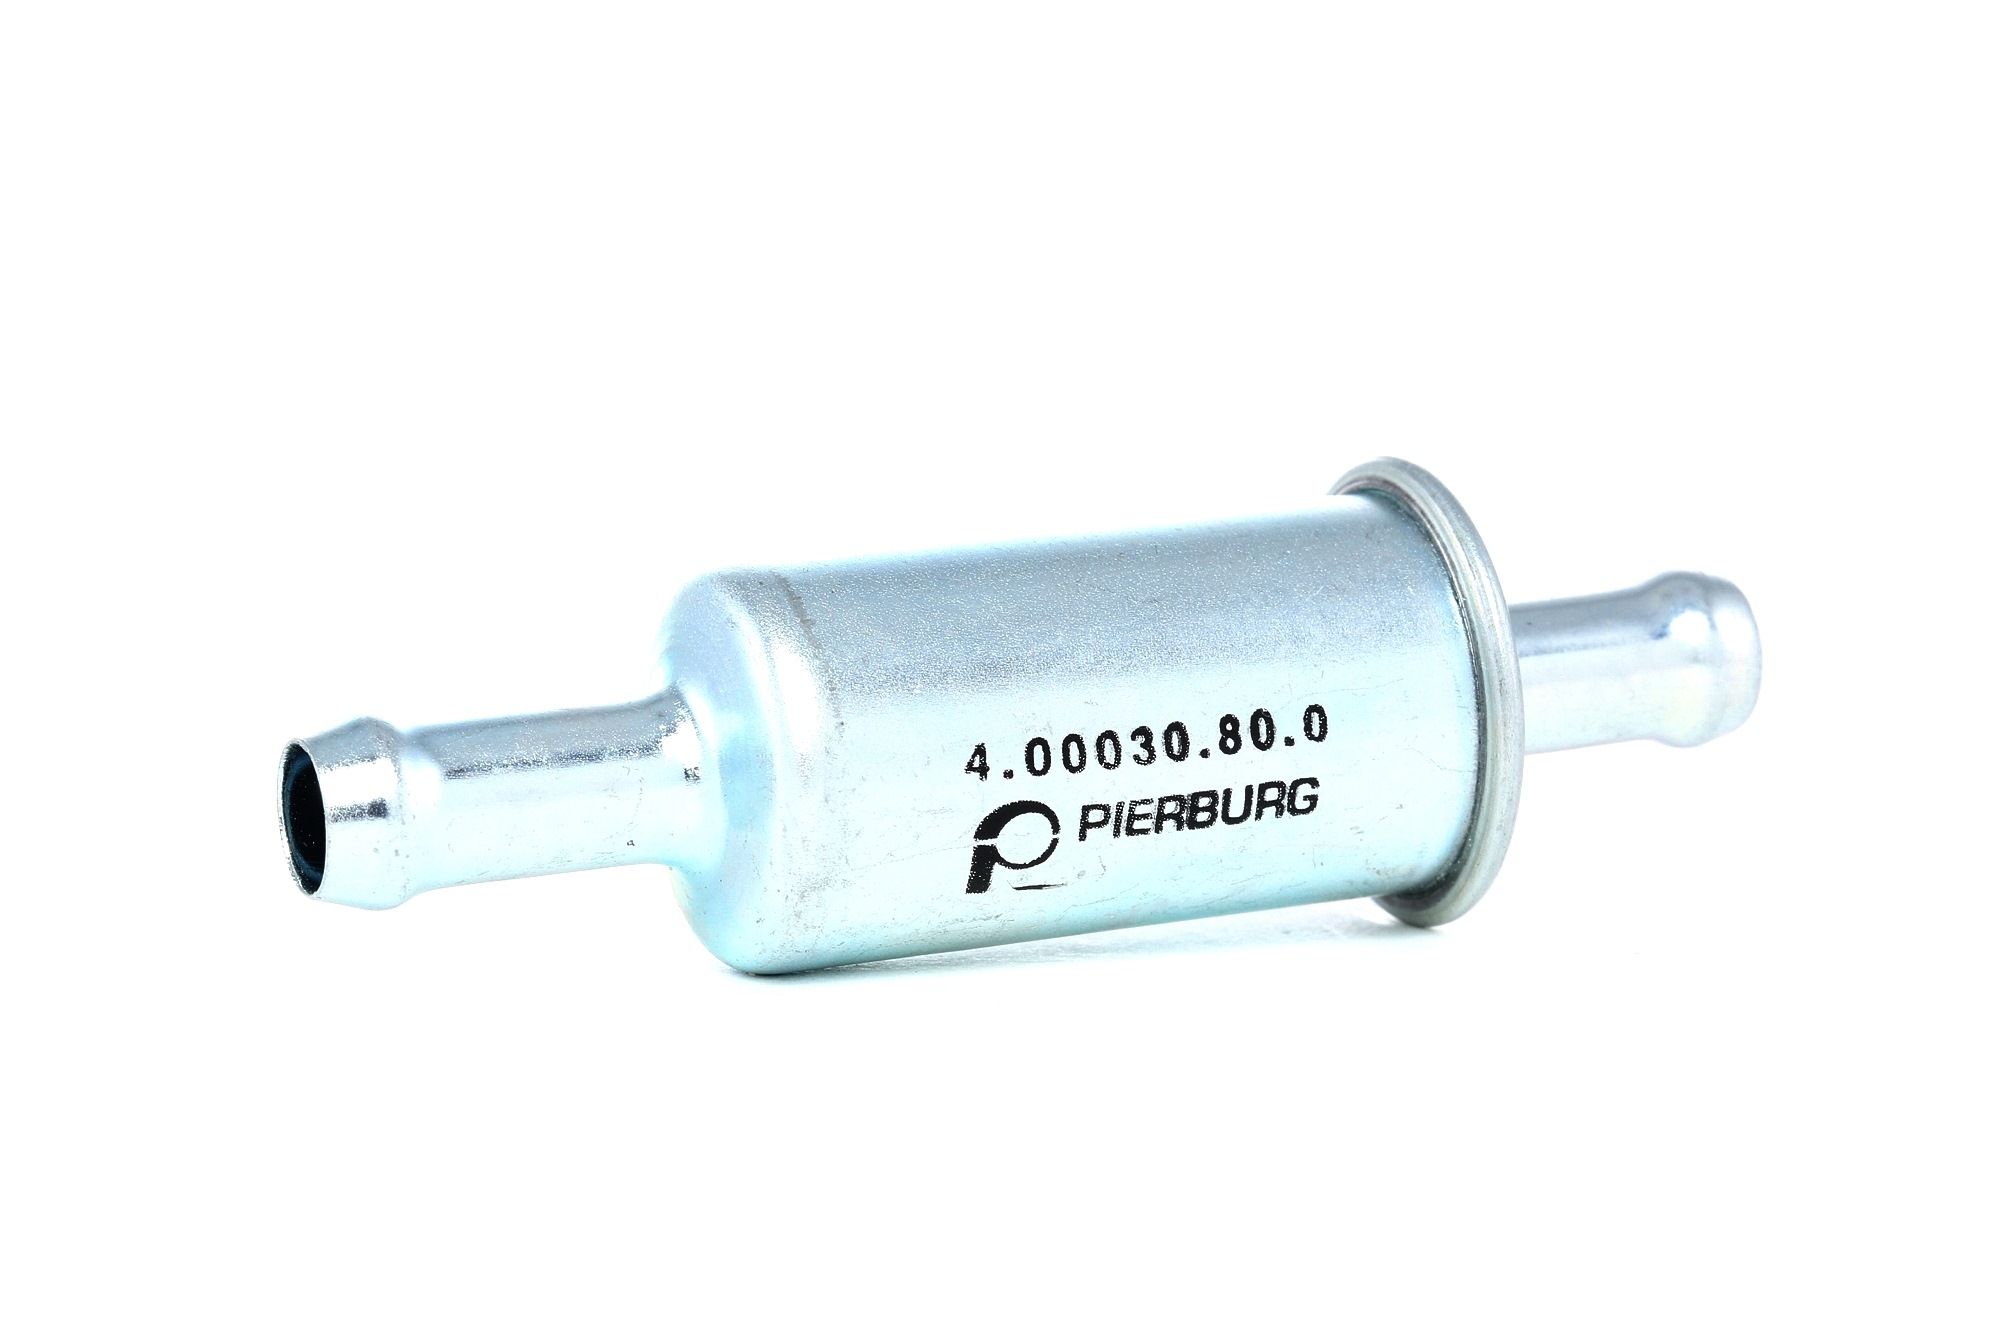 Original PORSCHE Fuel filter PIERBURG 4.00030.80.0